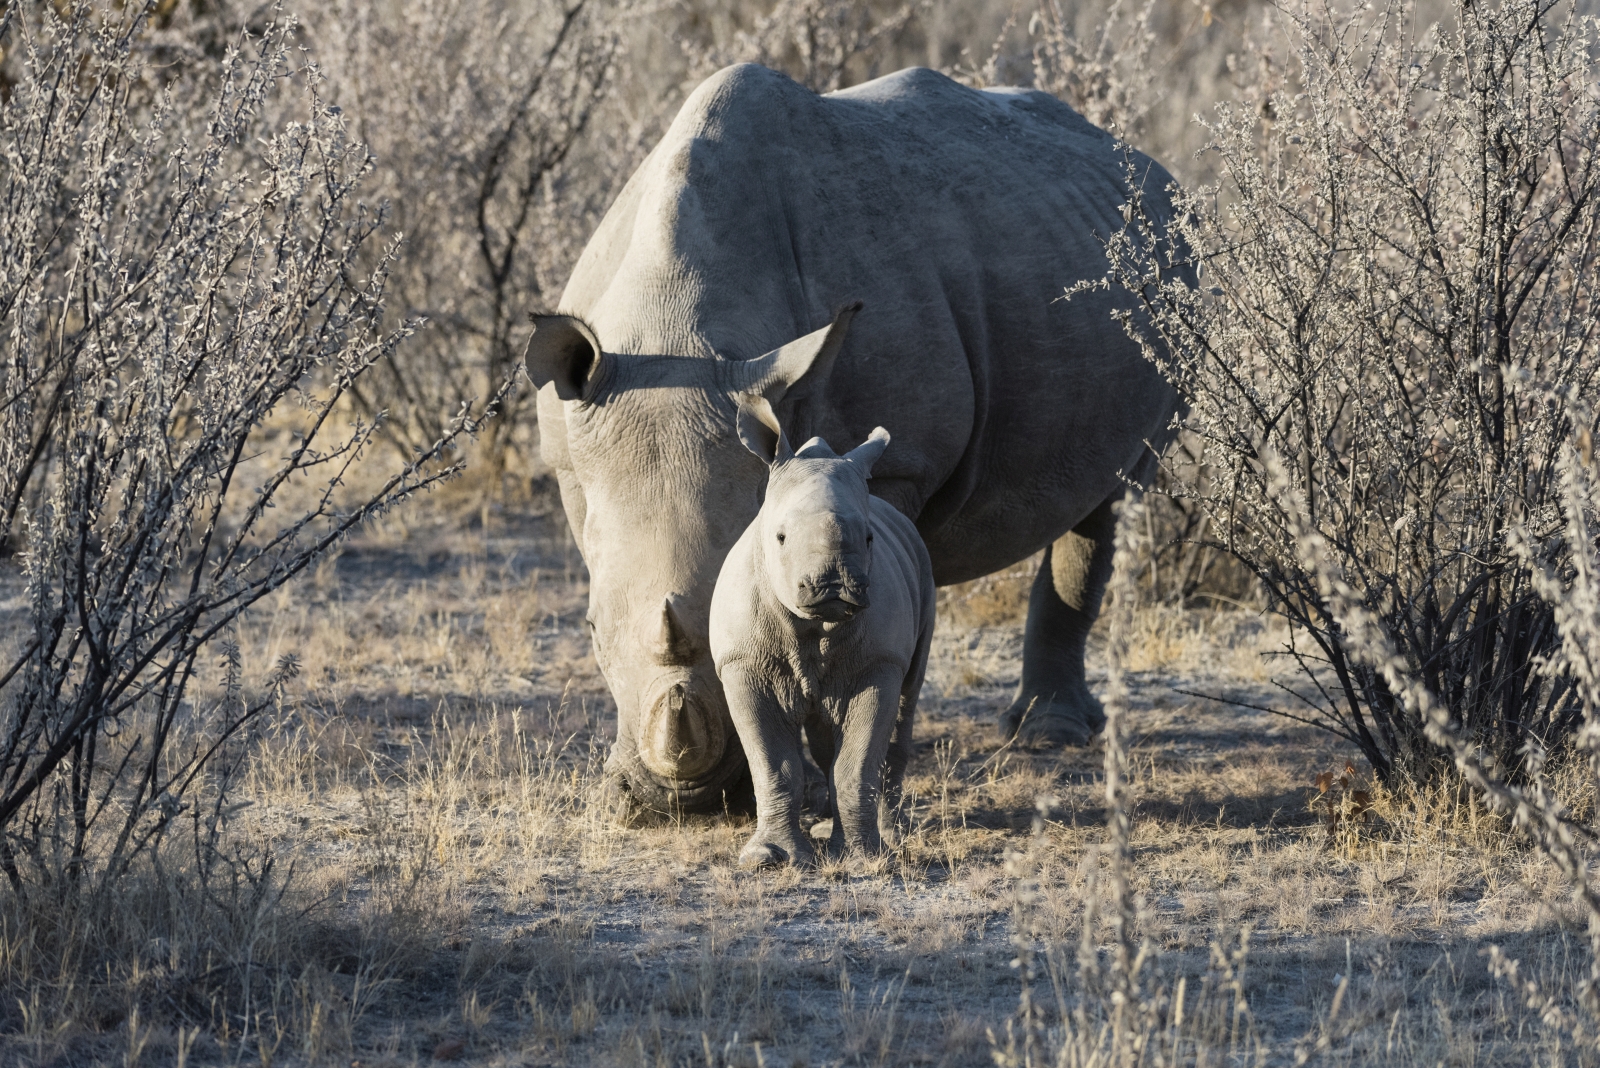 White rhino with calf at Ongava